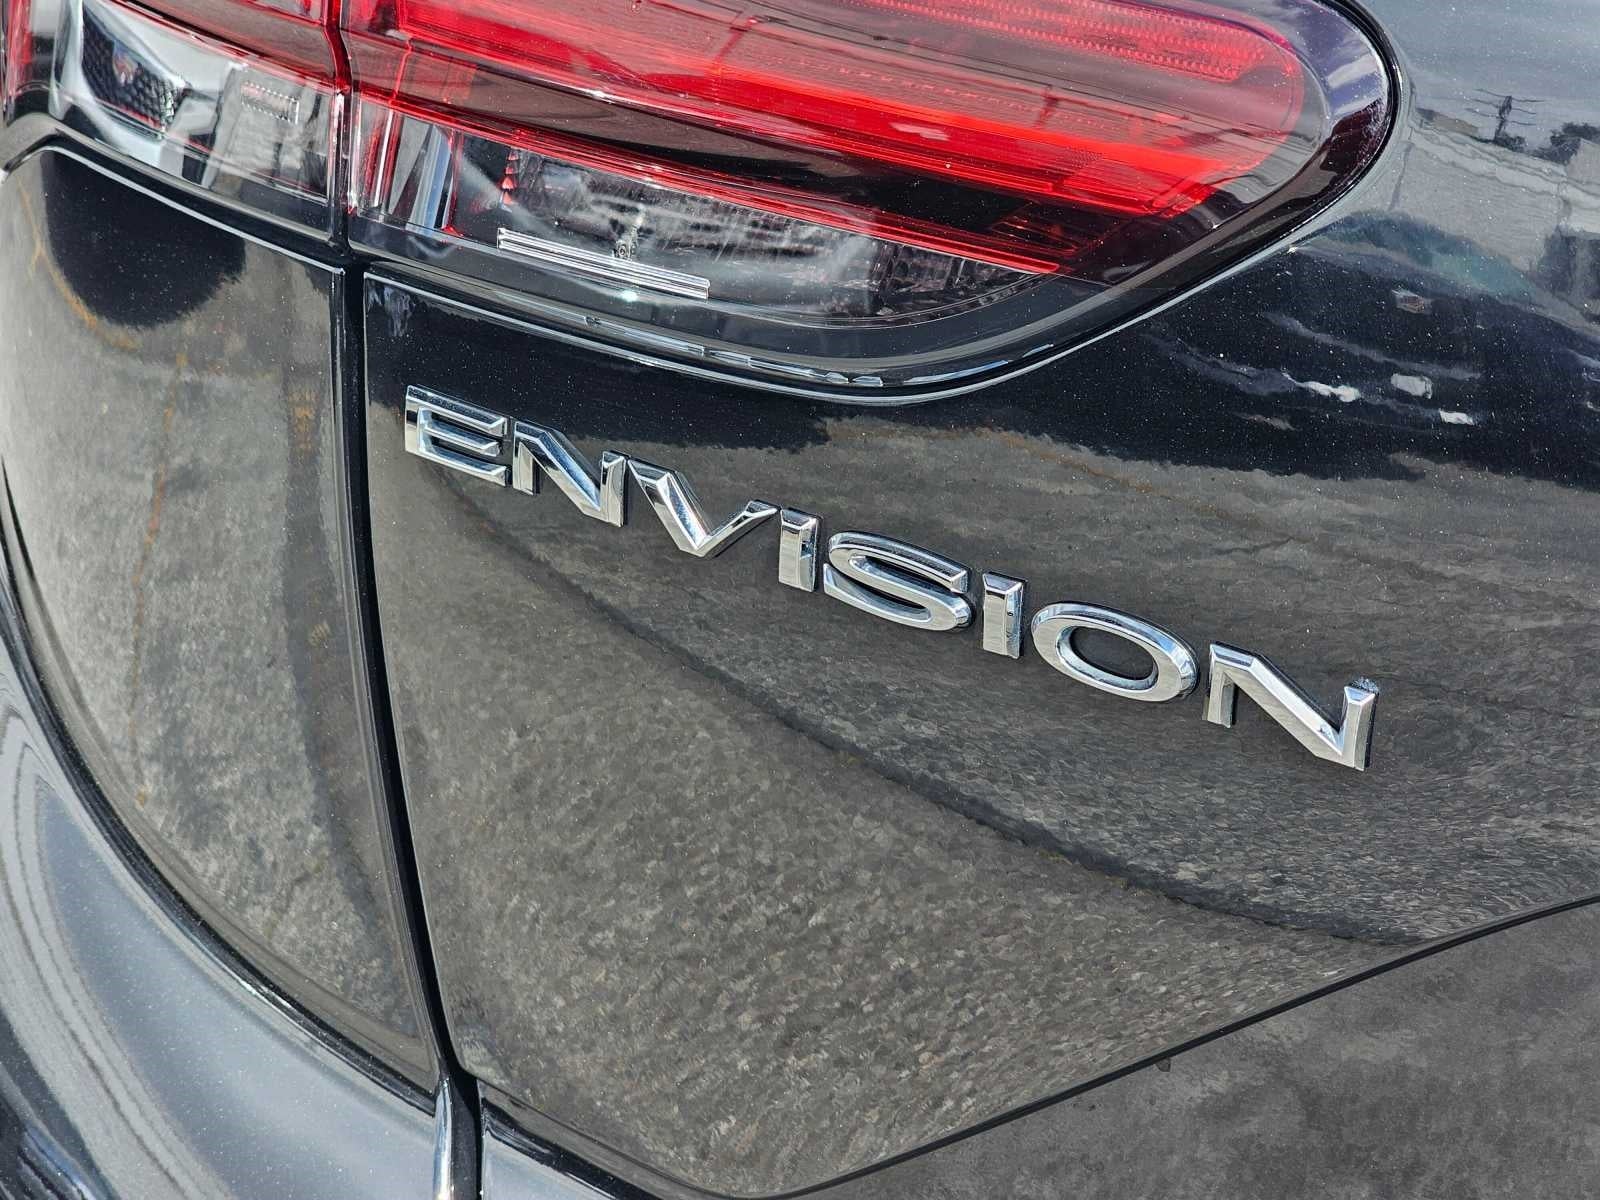 2021 Buick Envision Preferred